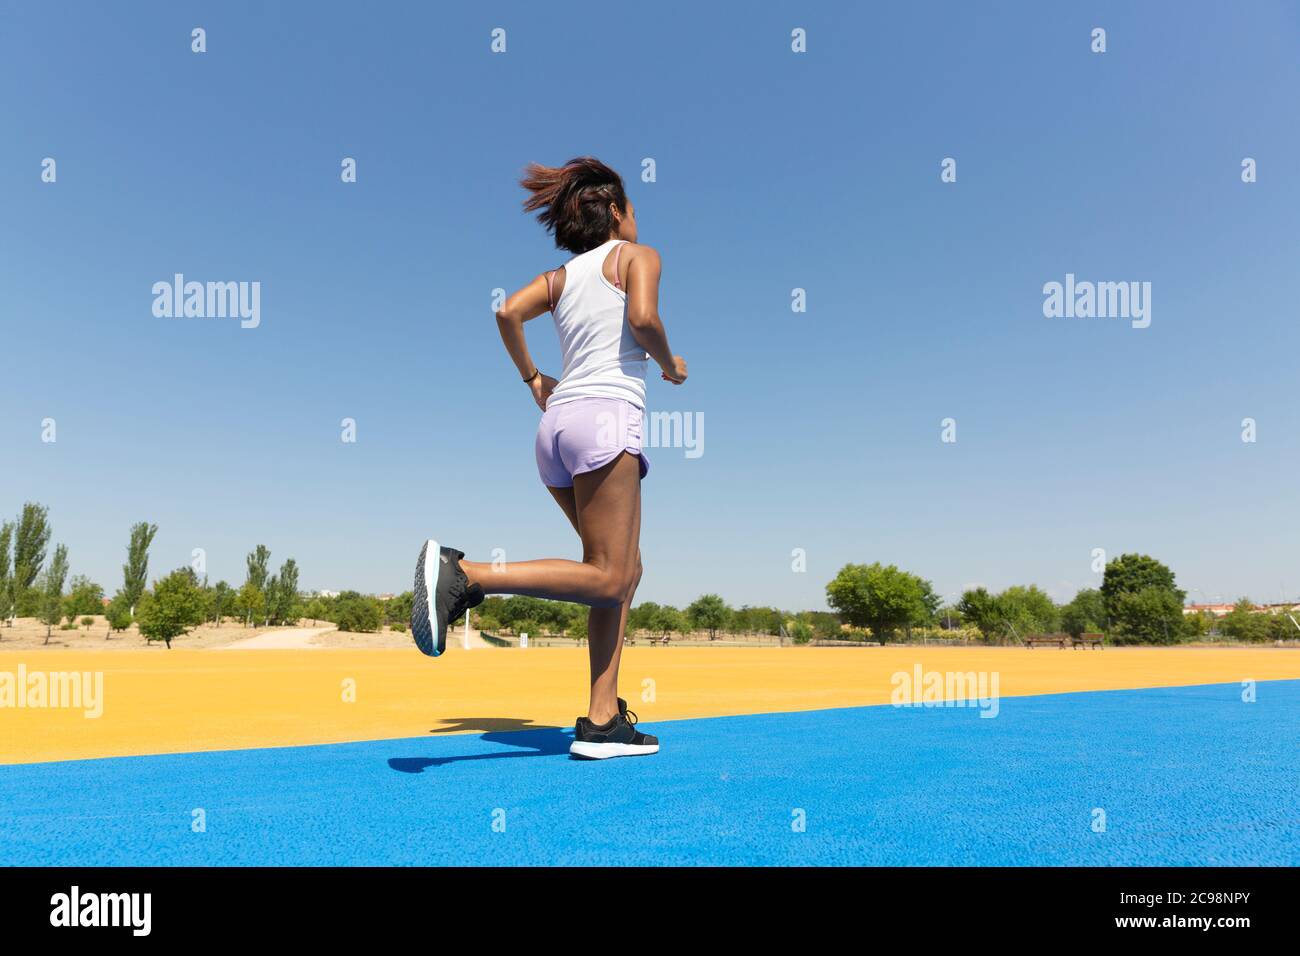 Rückseite einer Brünette Frau sprintet auf einer athletischen Strecke. Leerzeichen für Text. Stockfoto